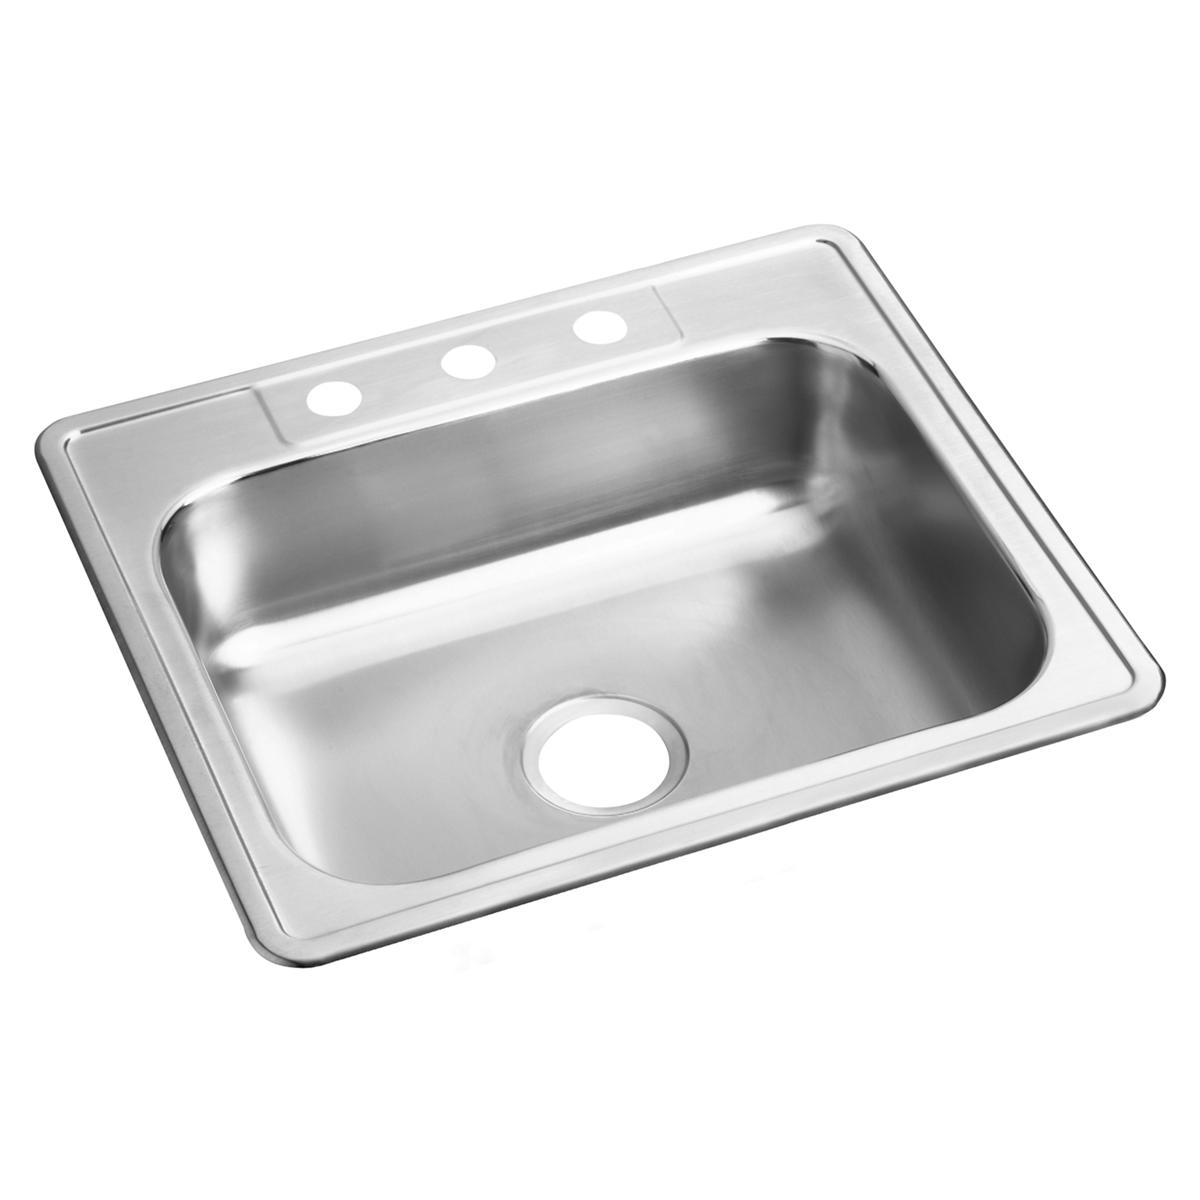 Elkay Stainless Steel Single Bowl Drop-in Sink 1127